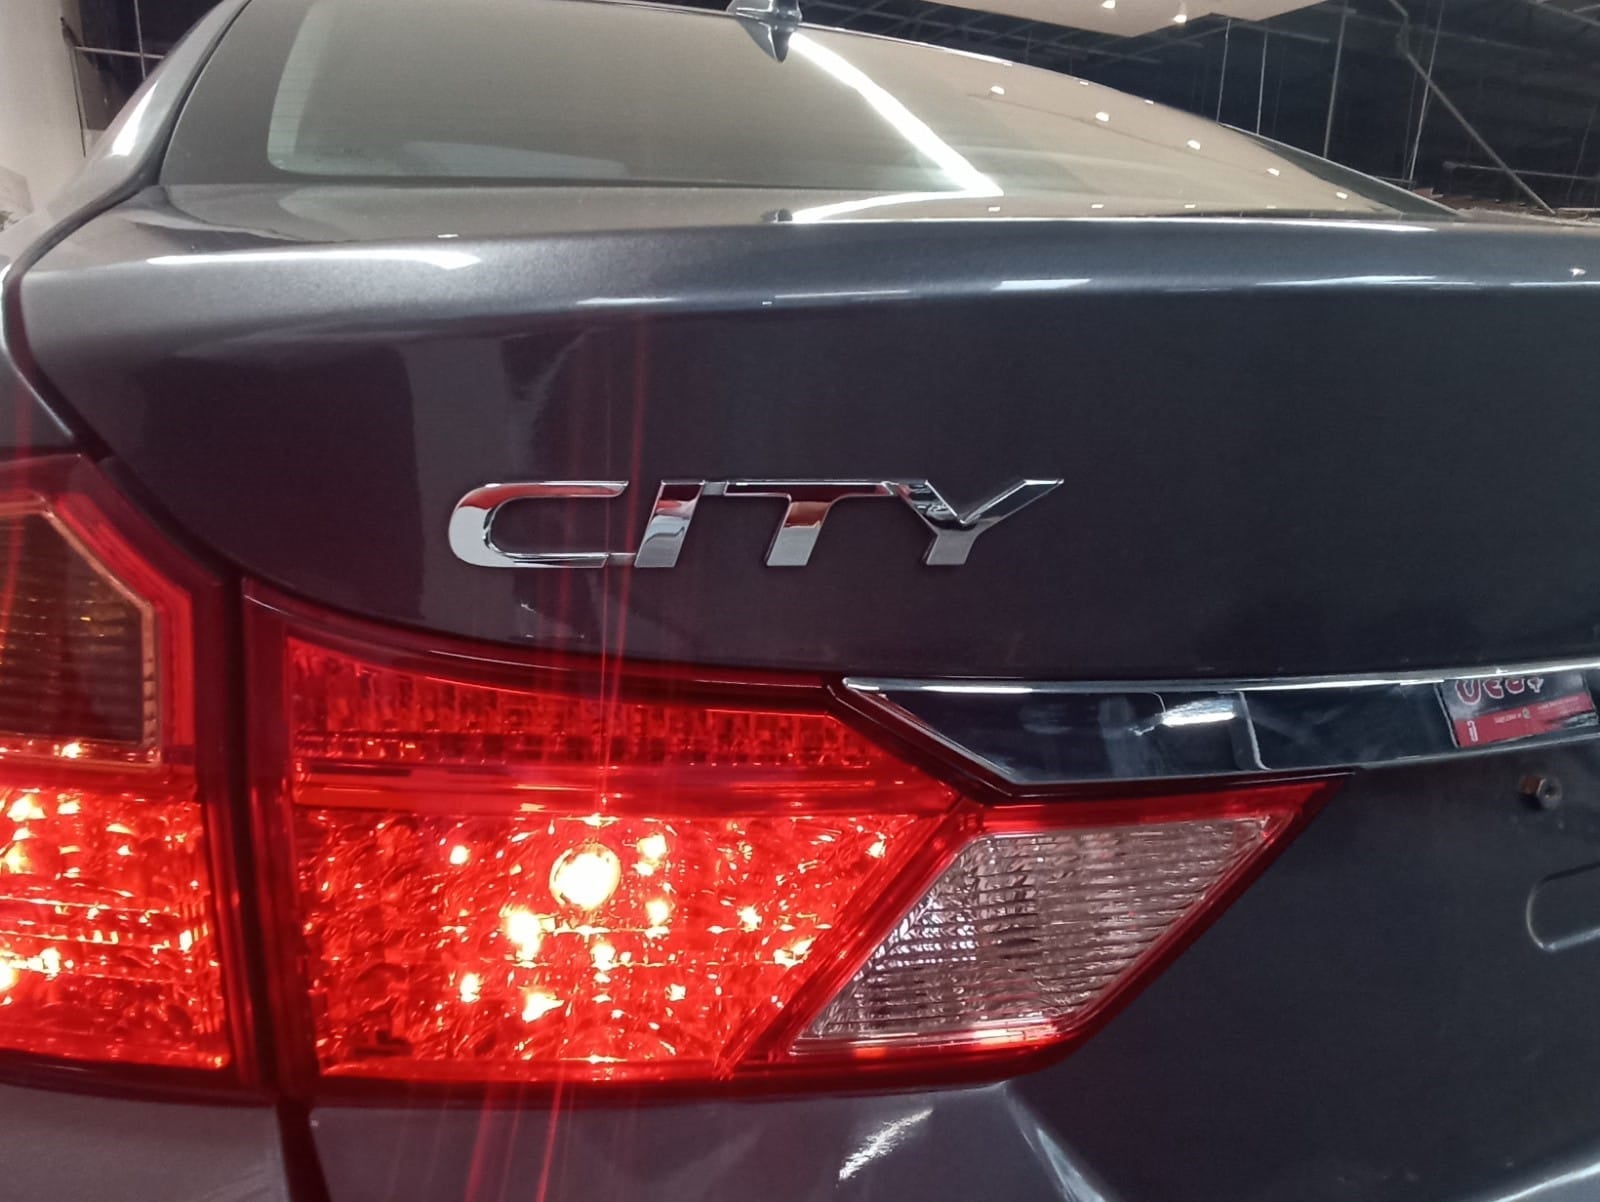 2019 Honda City LX L4 1.5L 118 CP 4 PUERTAS STD BA AA